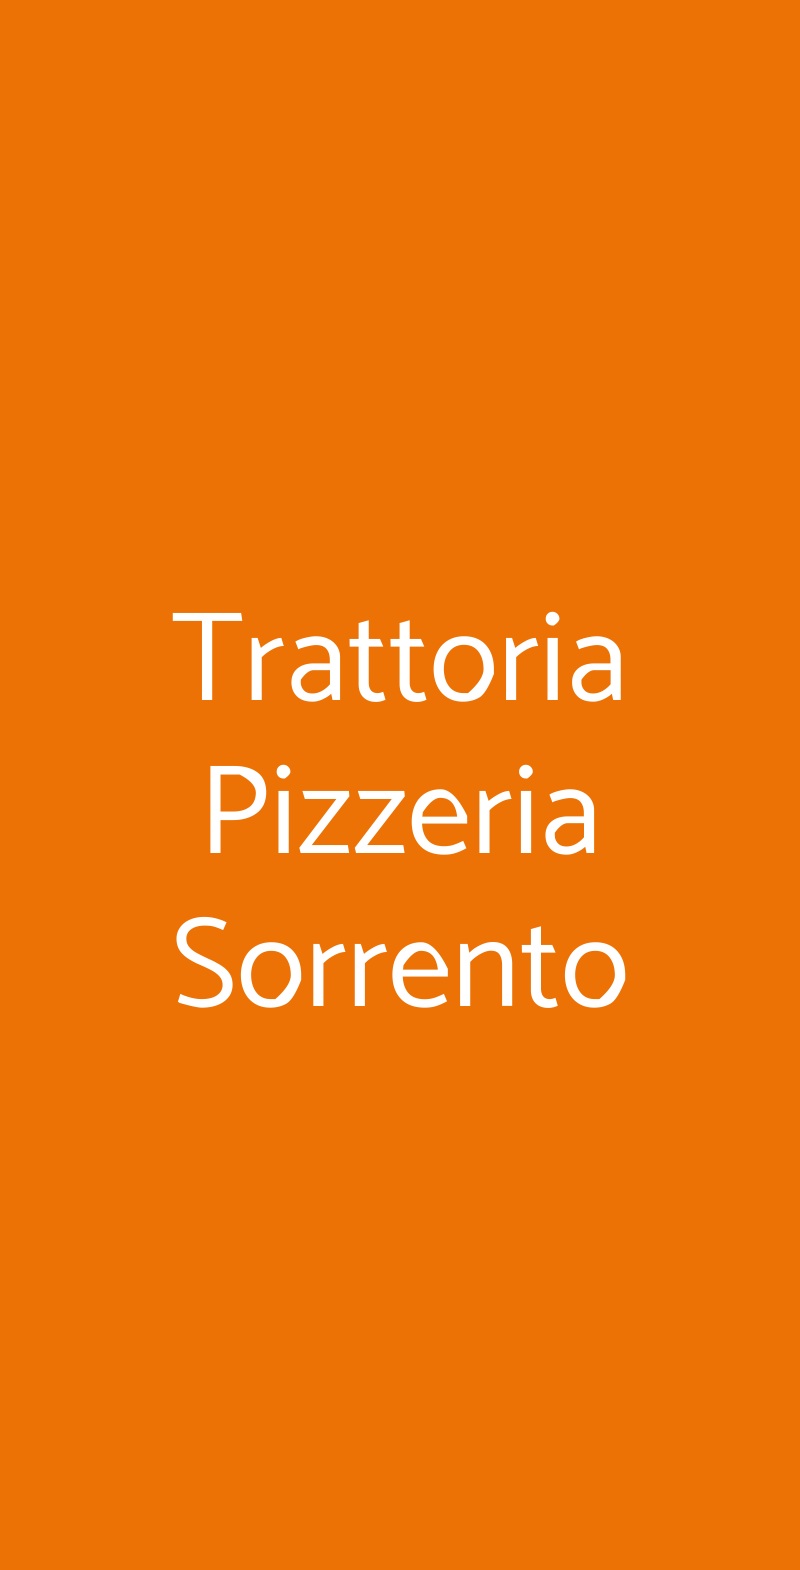 Trattoria Pizzeria Sorrento Verona menù 1 pagina